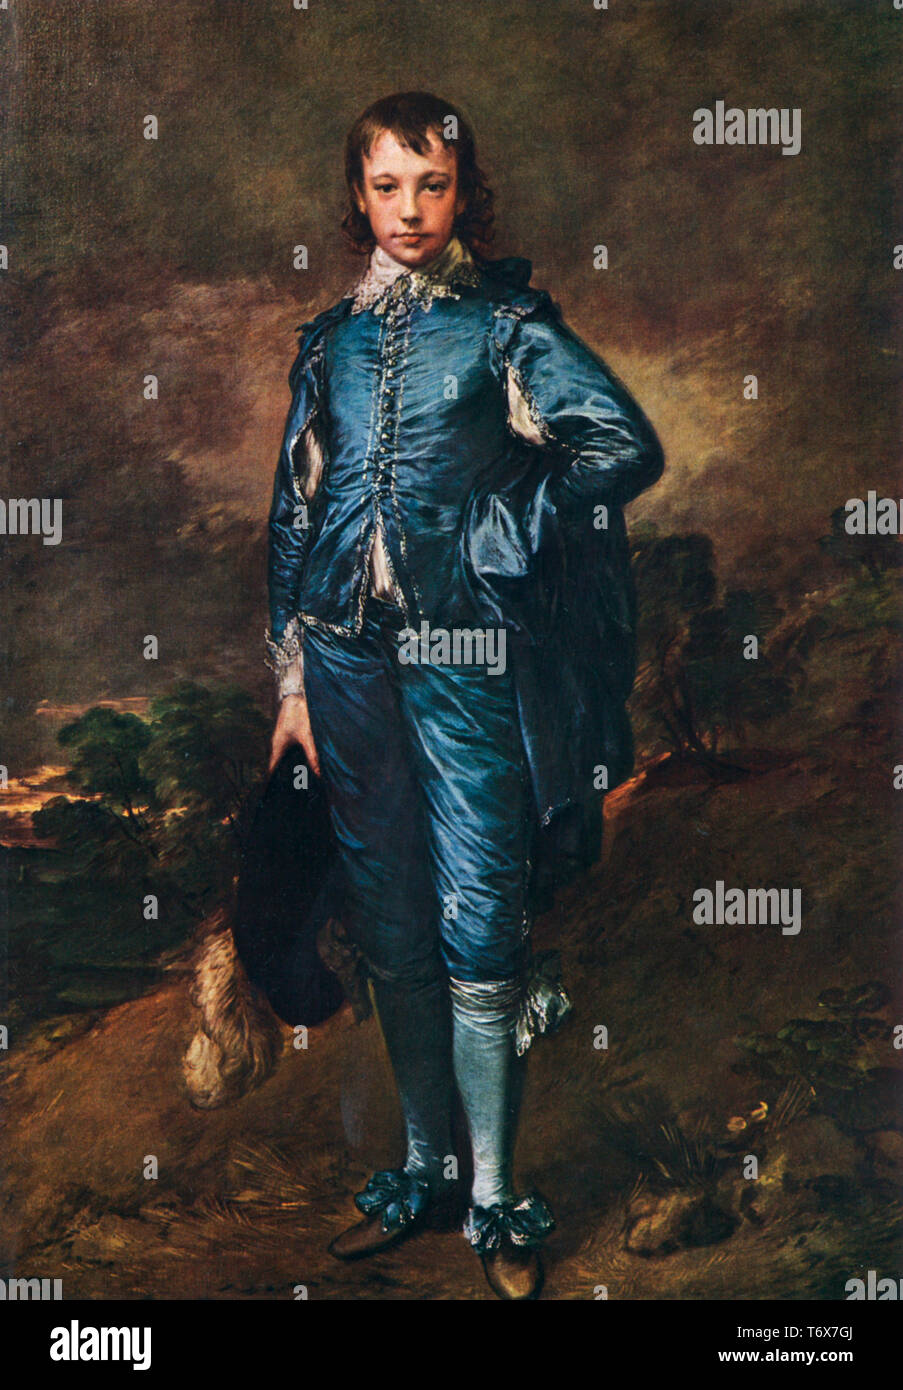 Il Boy Blu, c1770. Di Thomas Gainsborough (1727-1788). Forse il lavoro più famoso di Gainsborough, questo potrebbe essere un ritratto di Jonathan Buttle (1752-1805), il figlio di un mercante ricco di ferramenta, anche se questo non è mai stato dimostrato. Foto Stock